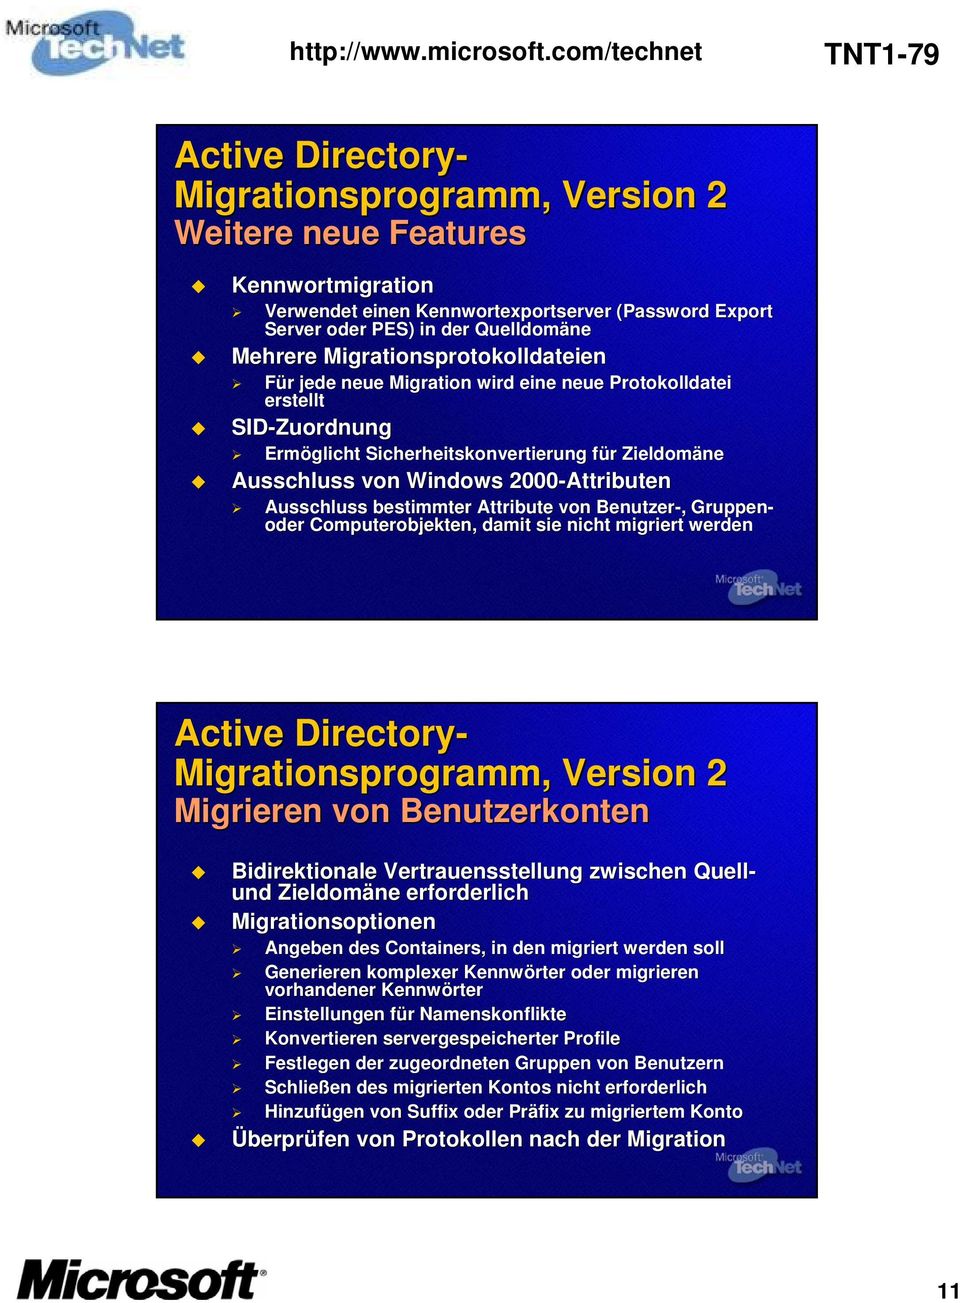 Ausschluss bestimmter Attribute von Benutzer-,, Gruppen- oder Computerobjekten, damit sie nicht migriert werden Active Directory- Migrationsprogramm,, Version 2 Migrieren von Benutzerkonten